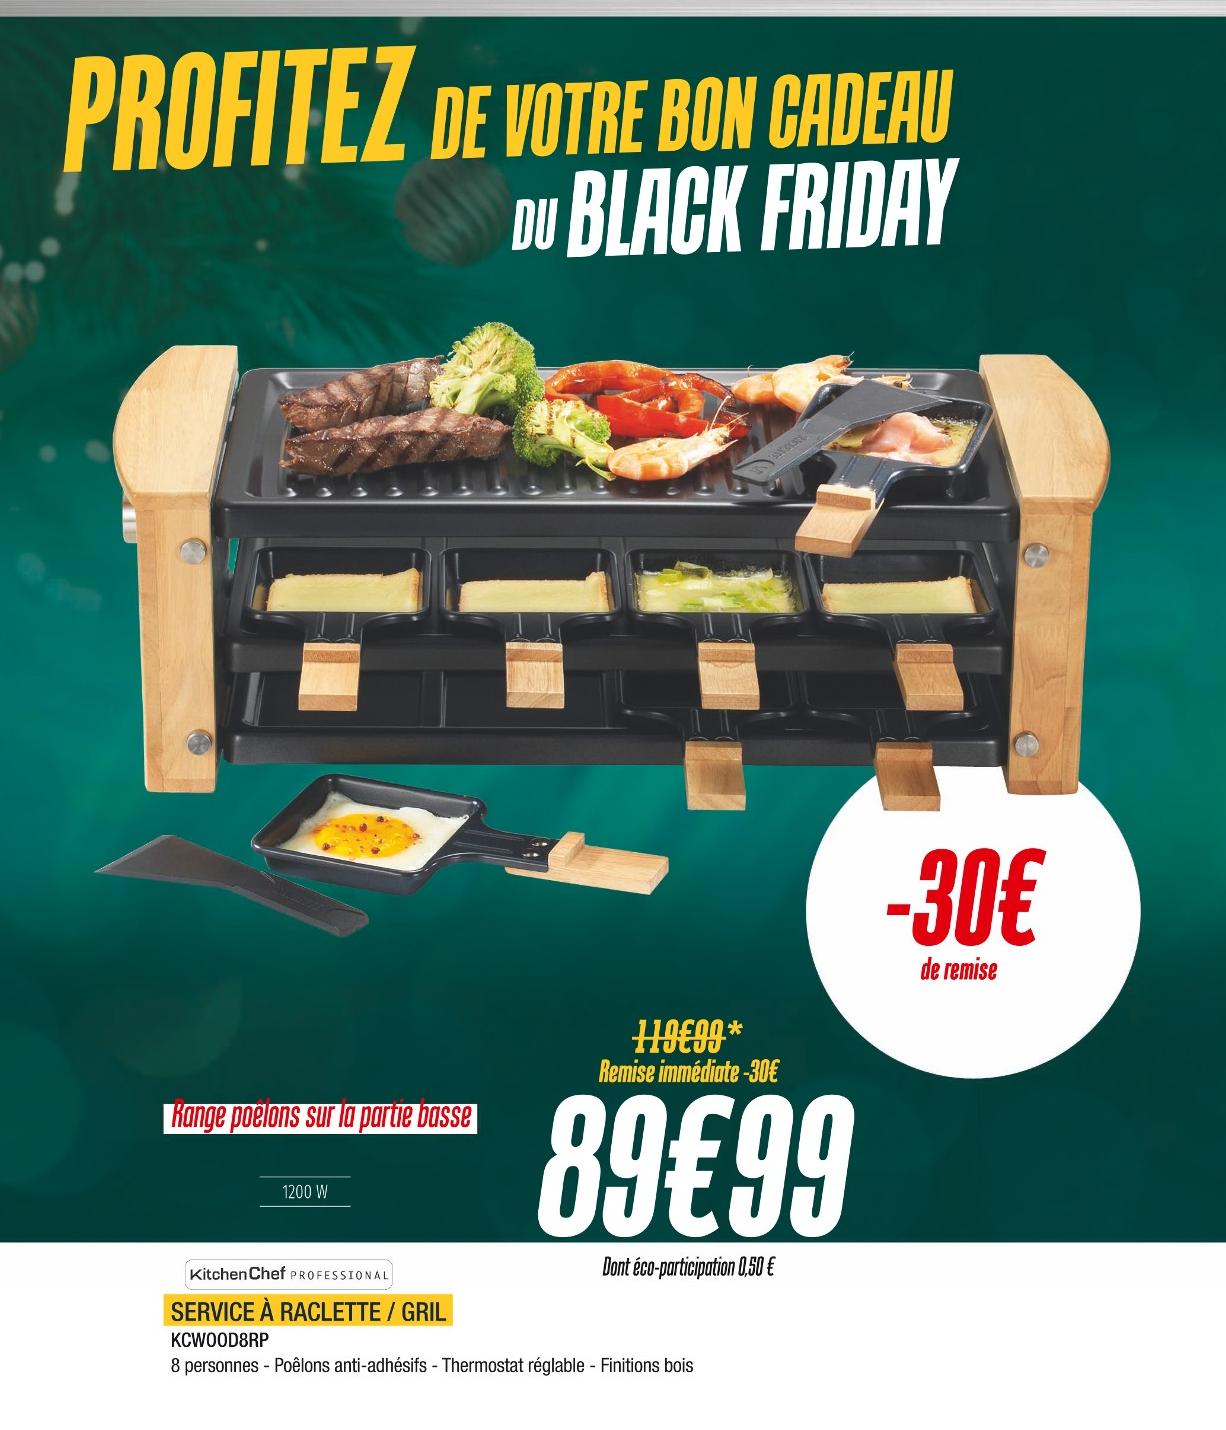 Appareil Raclette/grill Franprix ᐅ Promos et prix dans le